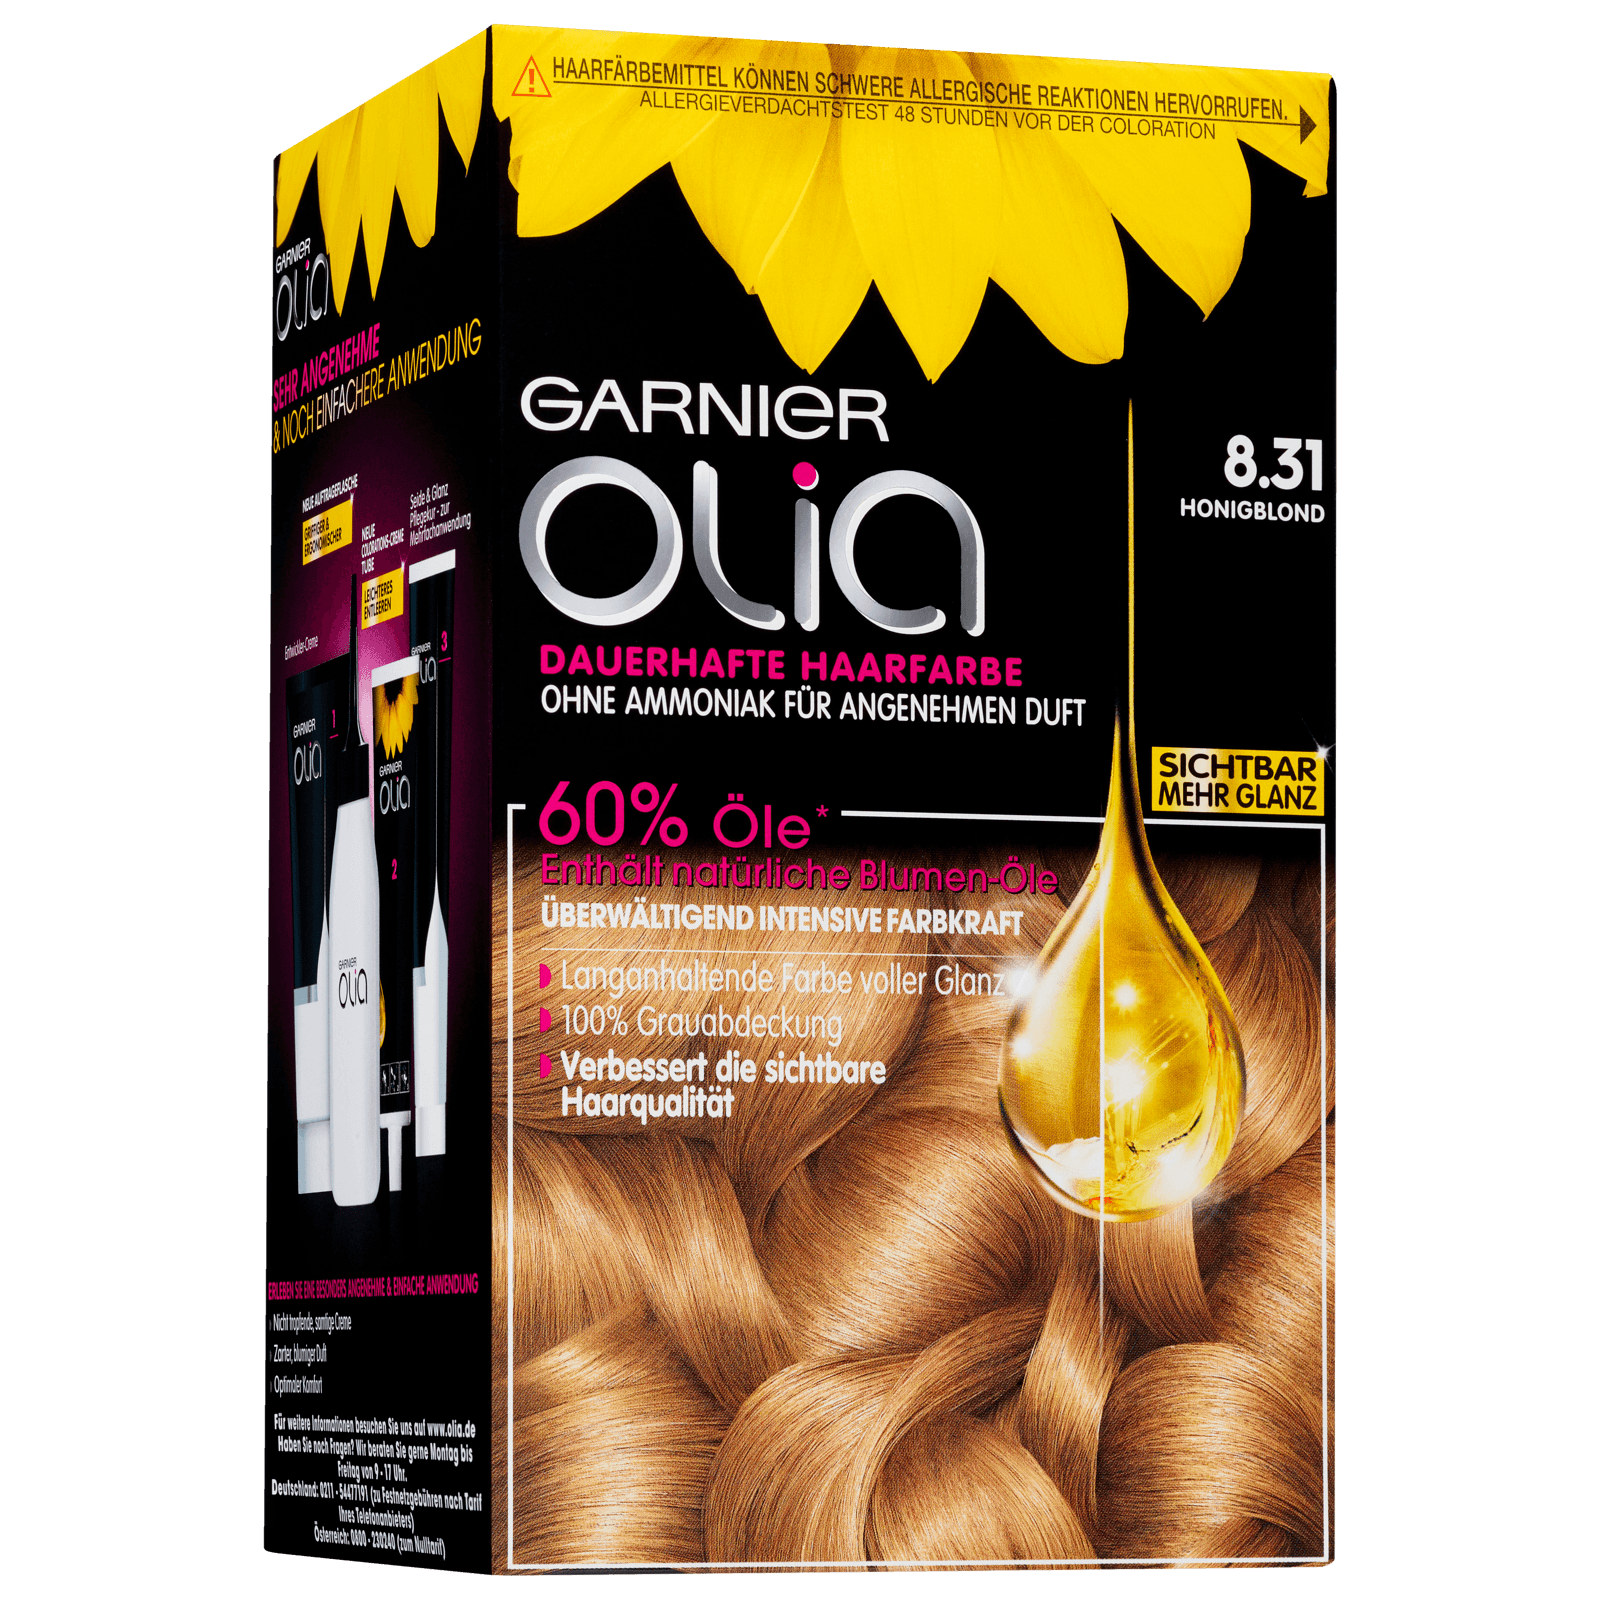 Garnier Olia honigblond REWE Dauerhafte Haarfarbe bei bestellen! online 8.31